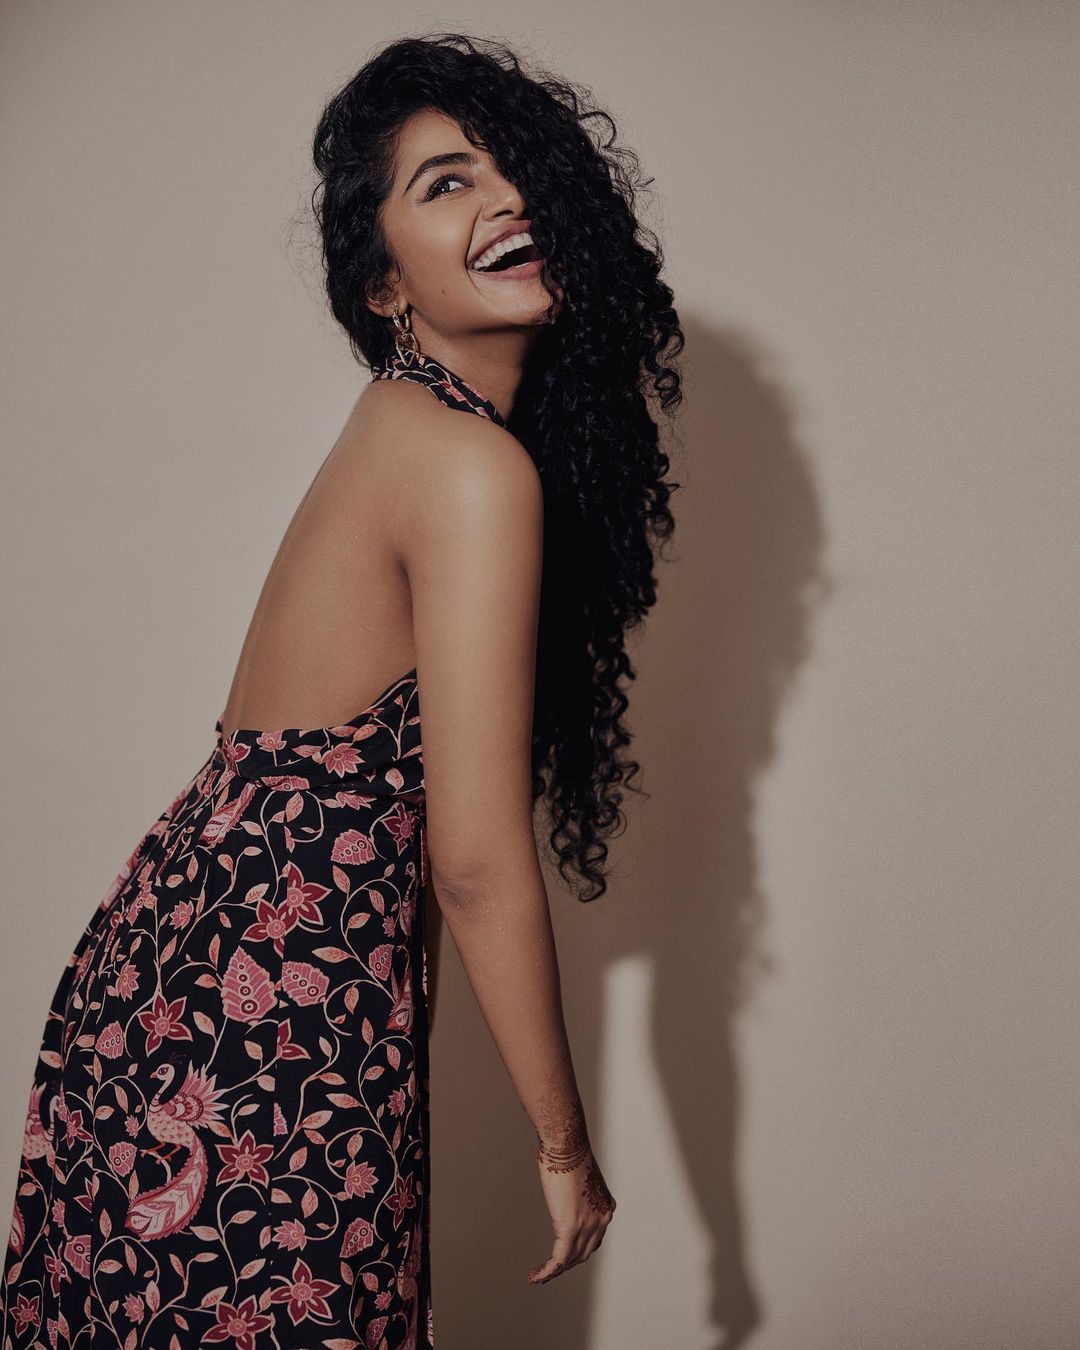 Actress Anupama Parameswaran Poses In A Hot Sexy Backless Dress 7